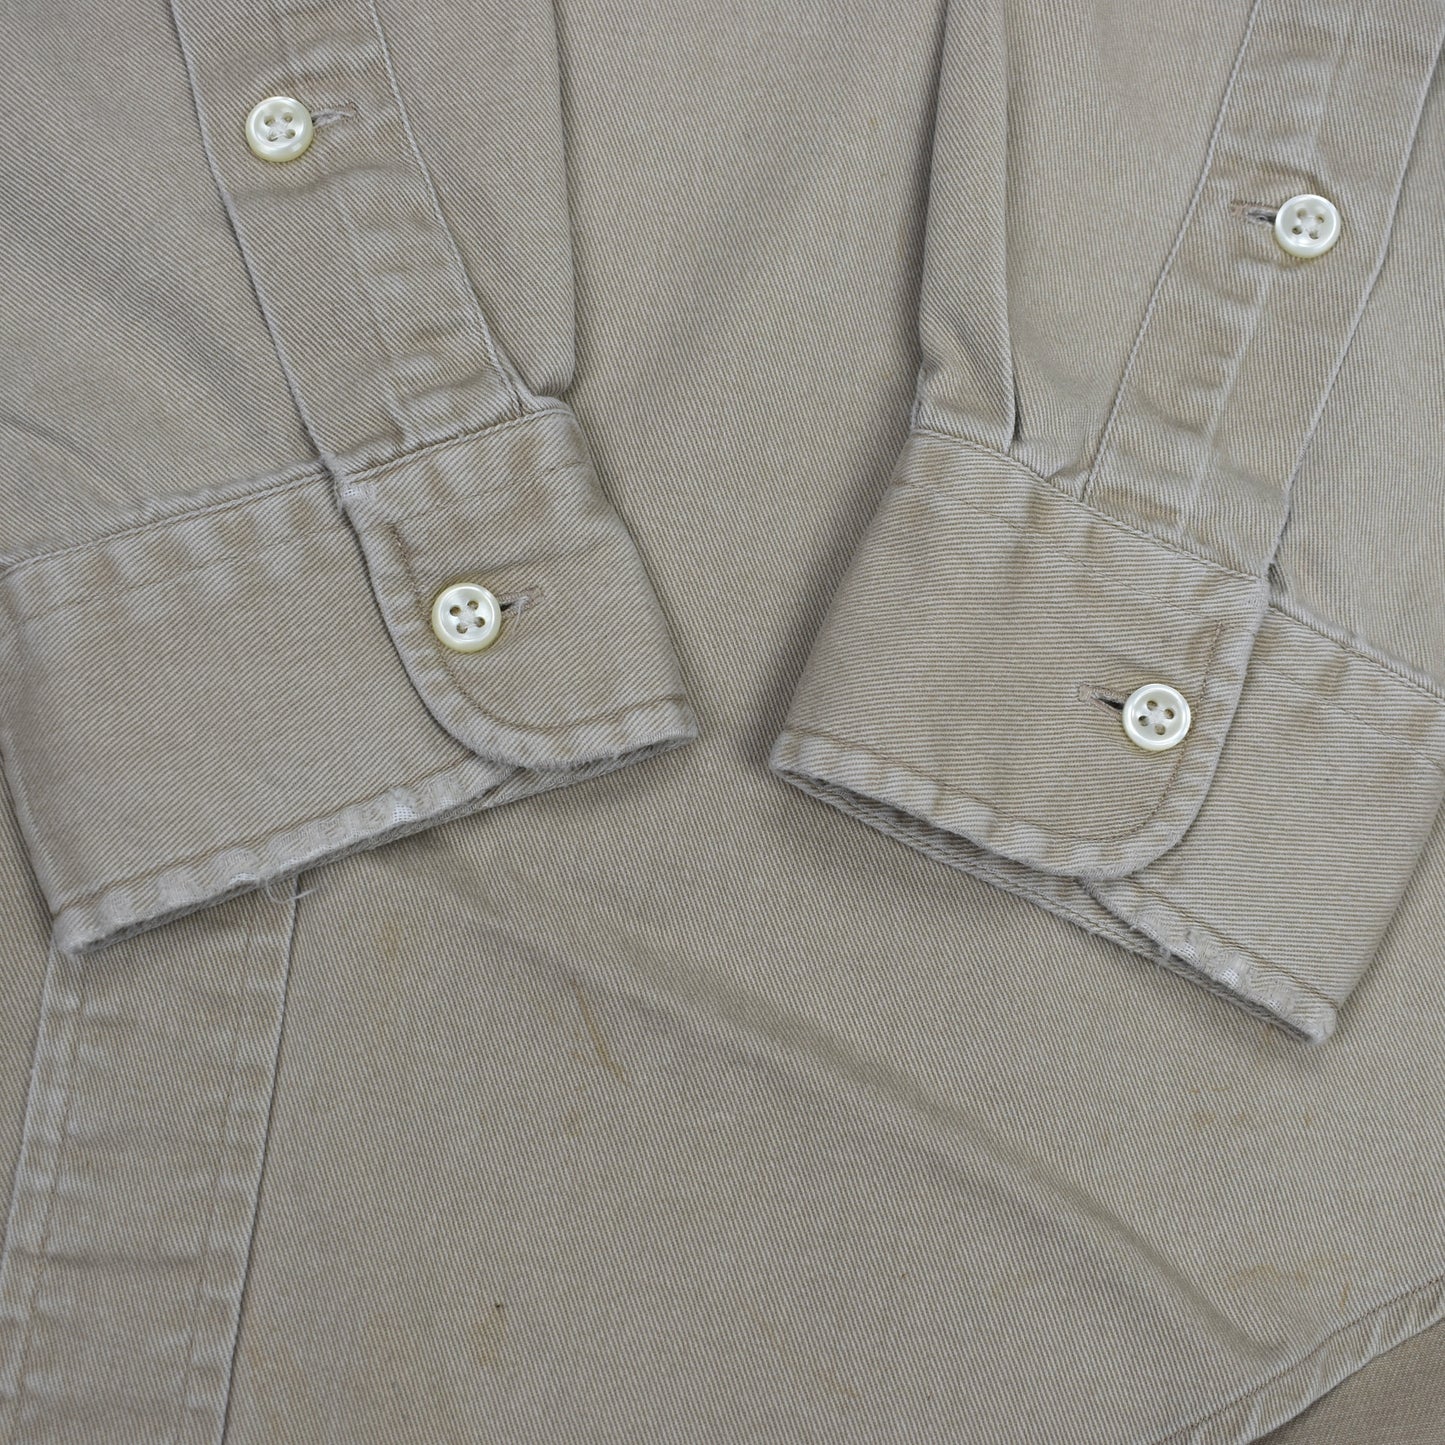 Polo Ralph Lauren - Vintage 90s Beige Twill Button Down Shirt